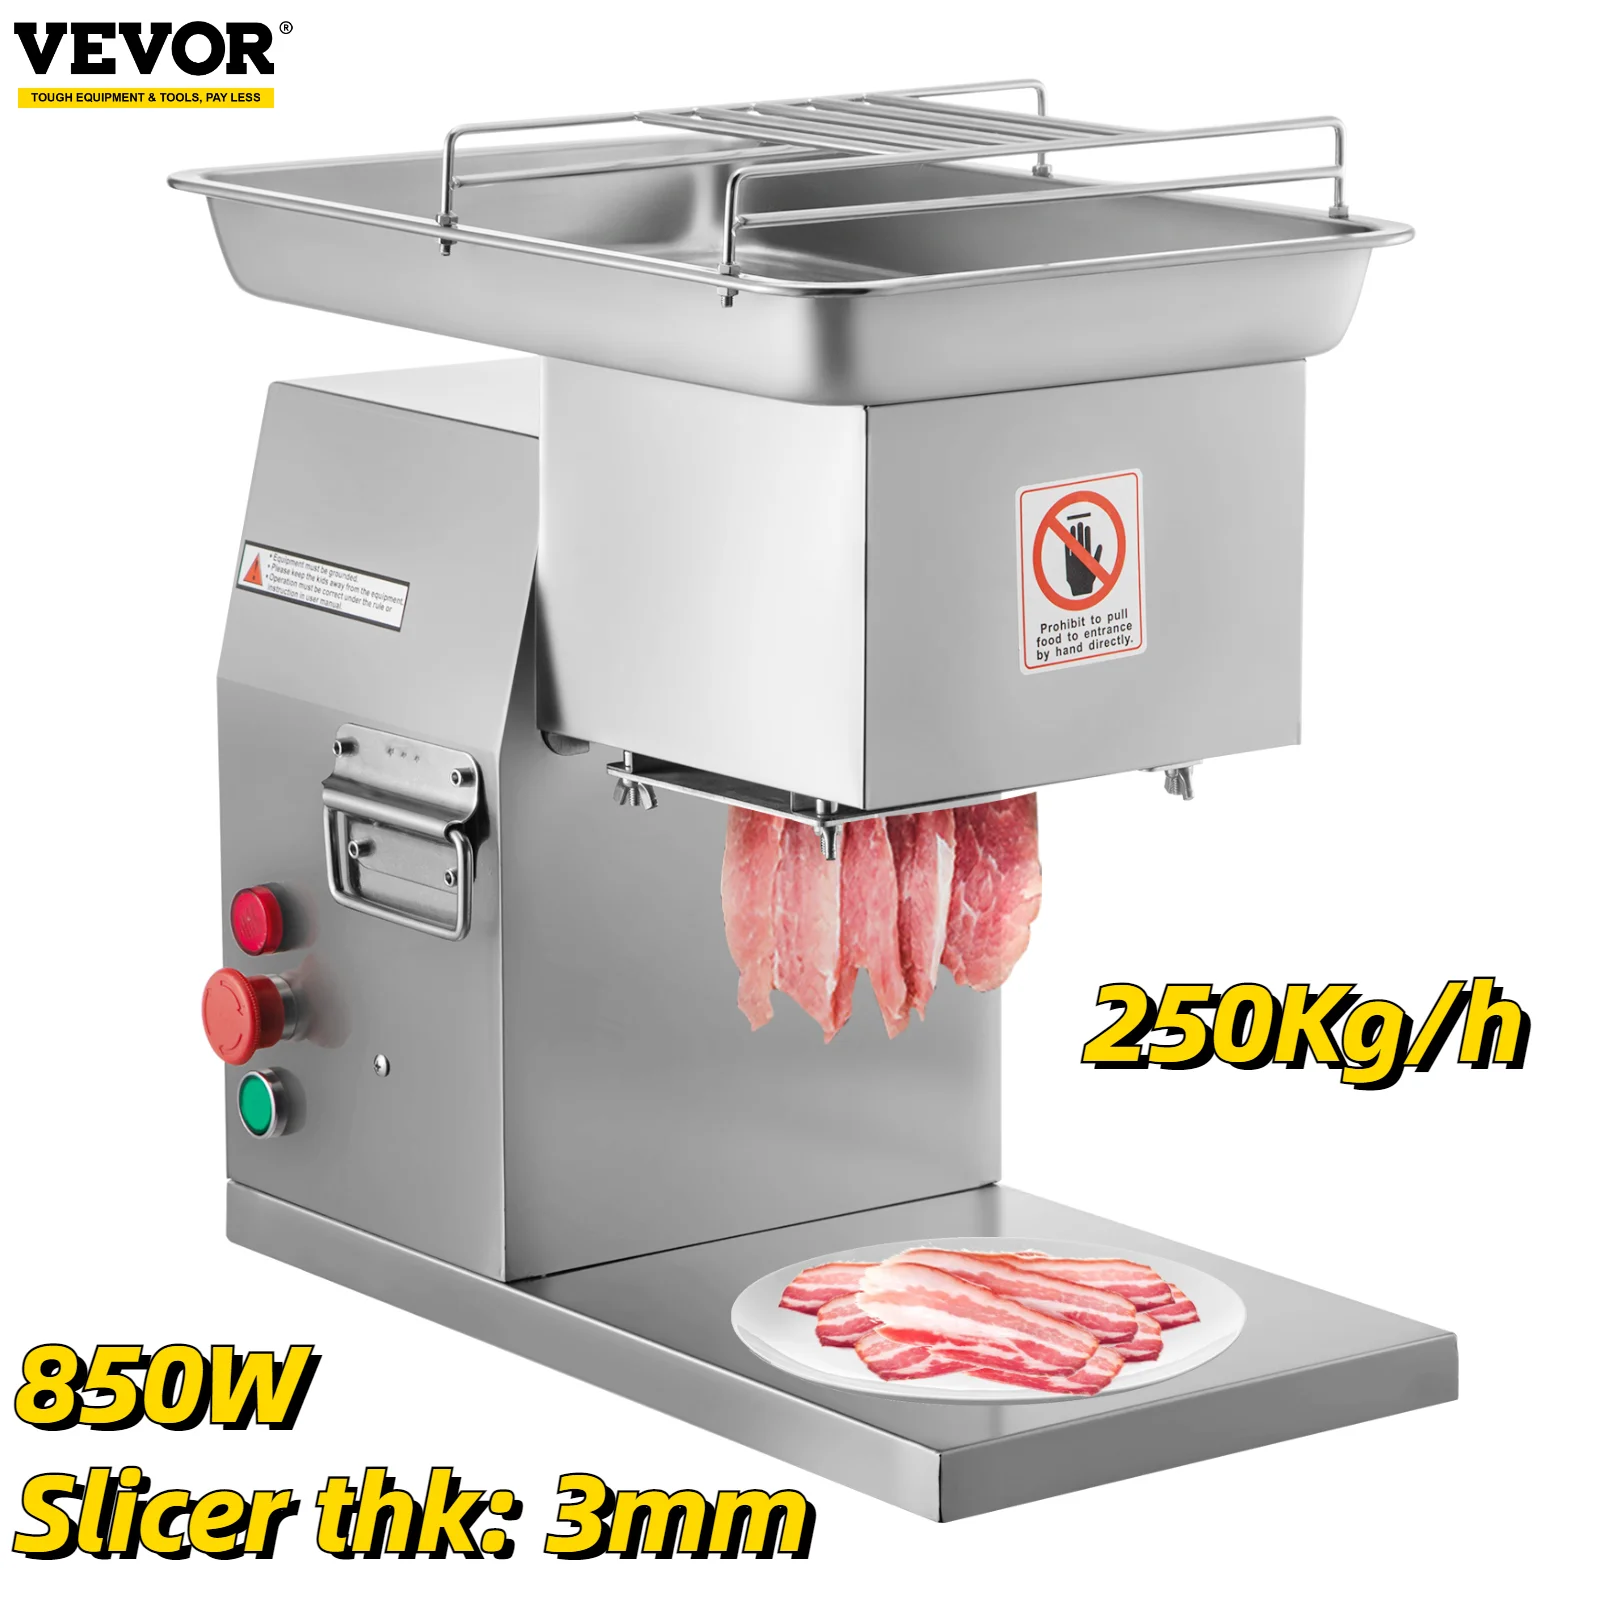 

VEVOR Коммерческая электрическая мясорубка 250 кг/ч 850 Вт нержавеющая сталь 3 мм лезвия резак для мяса нарезка Авто Бытовая кухонная техника